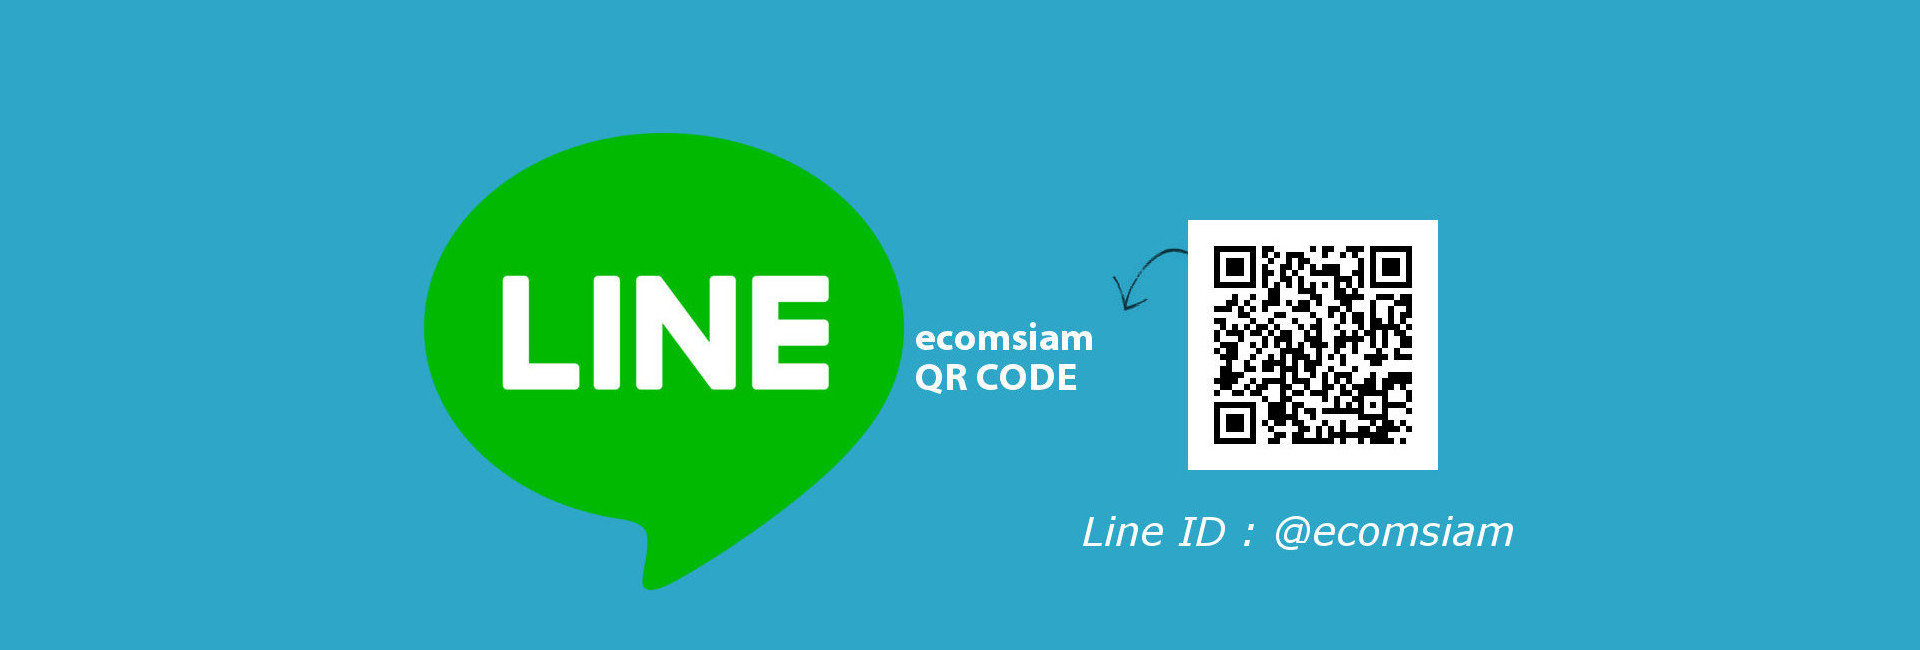 ติดต่อกับเว็บไซต์สำเร็จรูปไทย.com ติดต่อ Line ID :@ecomsiam โดยกด Add friend ได้ที่ https://line.me/R/ti/p/%40yel6714y และอ่าน QR Code @ecomsiam บริการเว็บสำเร็จรูปสำหรับธุรกิจ องค์กรและ ระบบอีคอมเมอร์ส สำหรับร้านออนไลน์ รับจดทะเบียนโดเมนเนมและเว็บโฮสต์ติ้งคุณภาพ